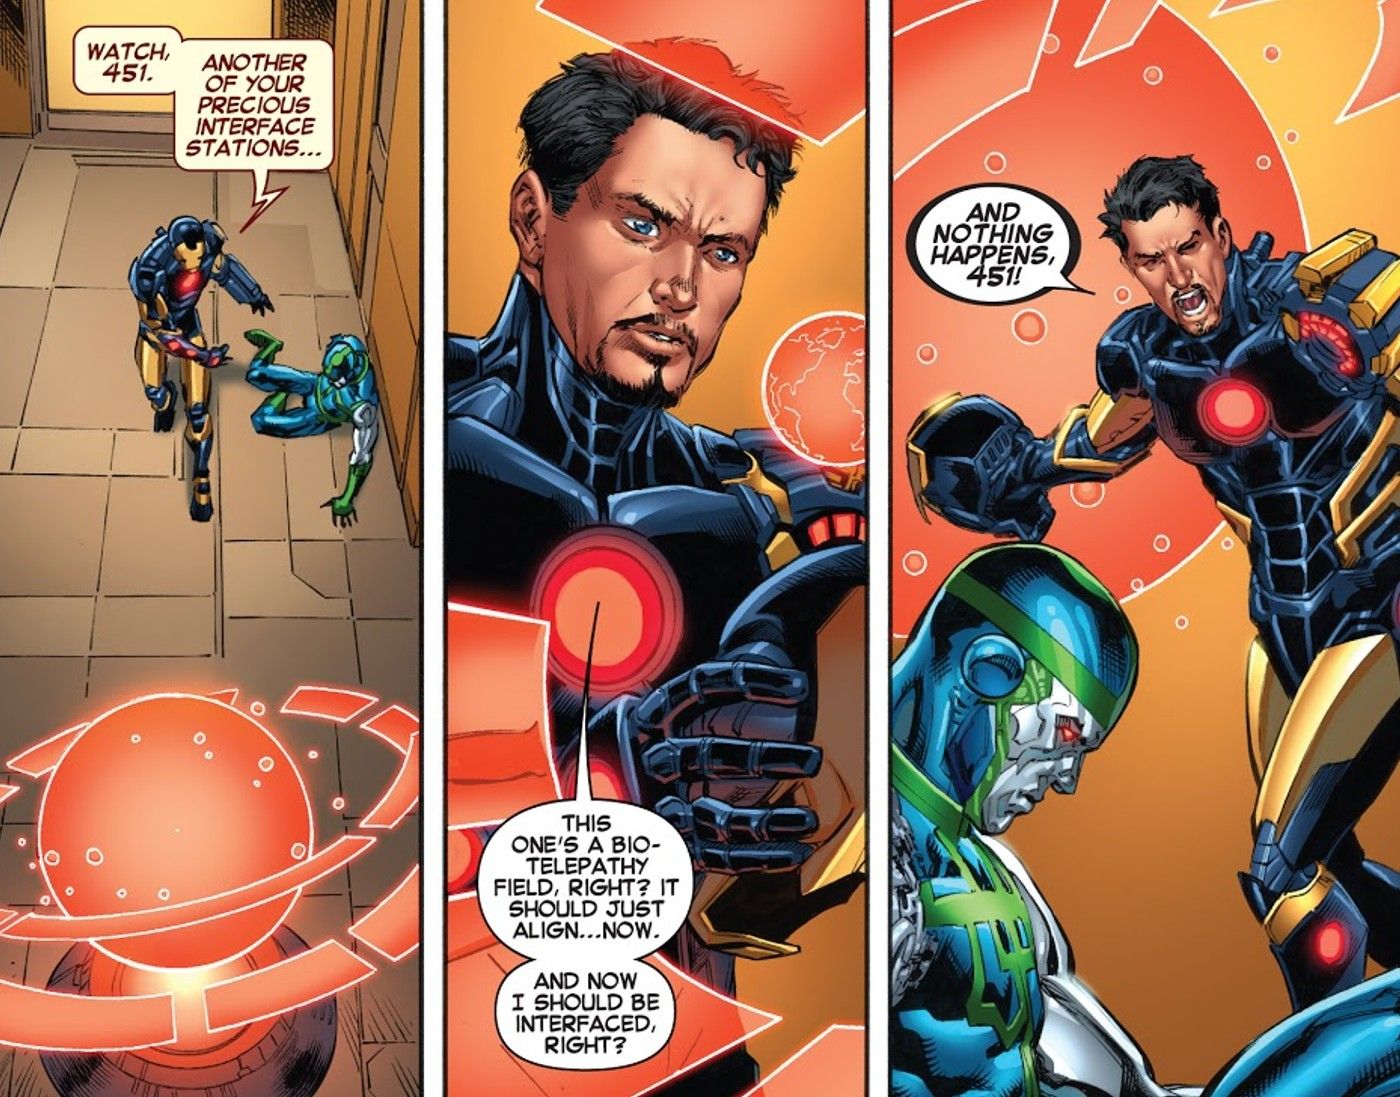 Iron Man can't pilot godkiller